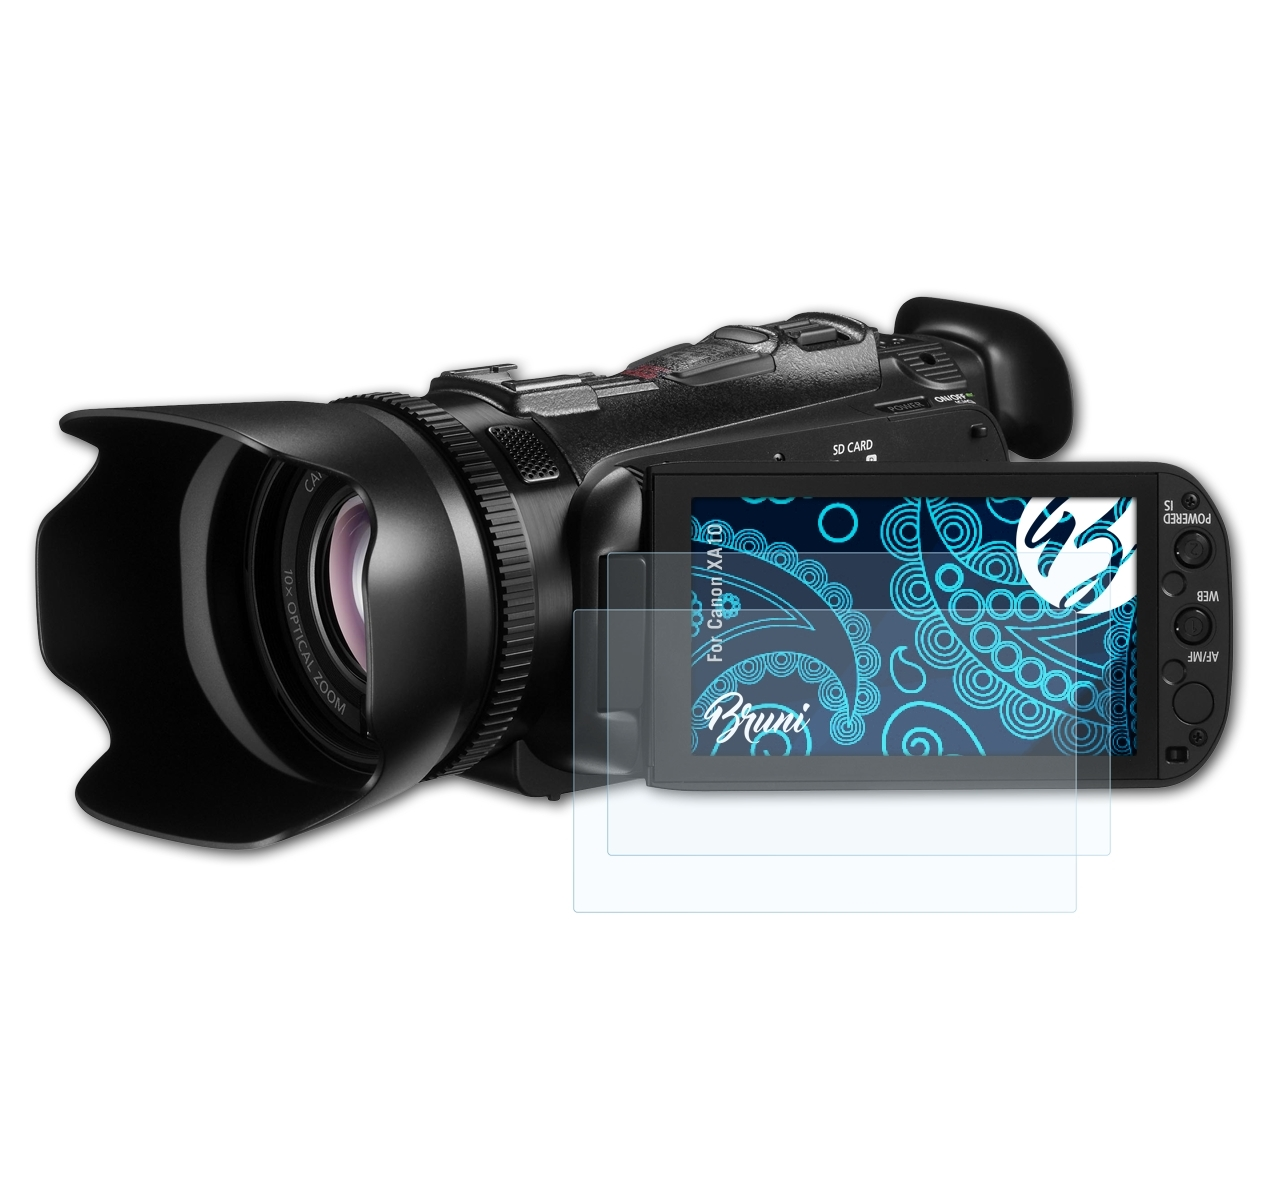 BRUNI 2x XA10) Schutzfolie(für Canon Basics-Clear